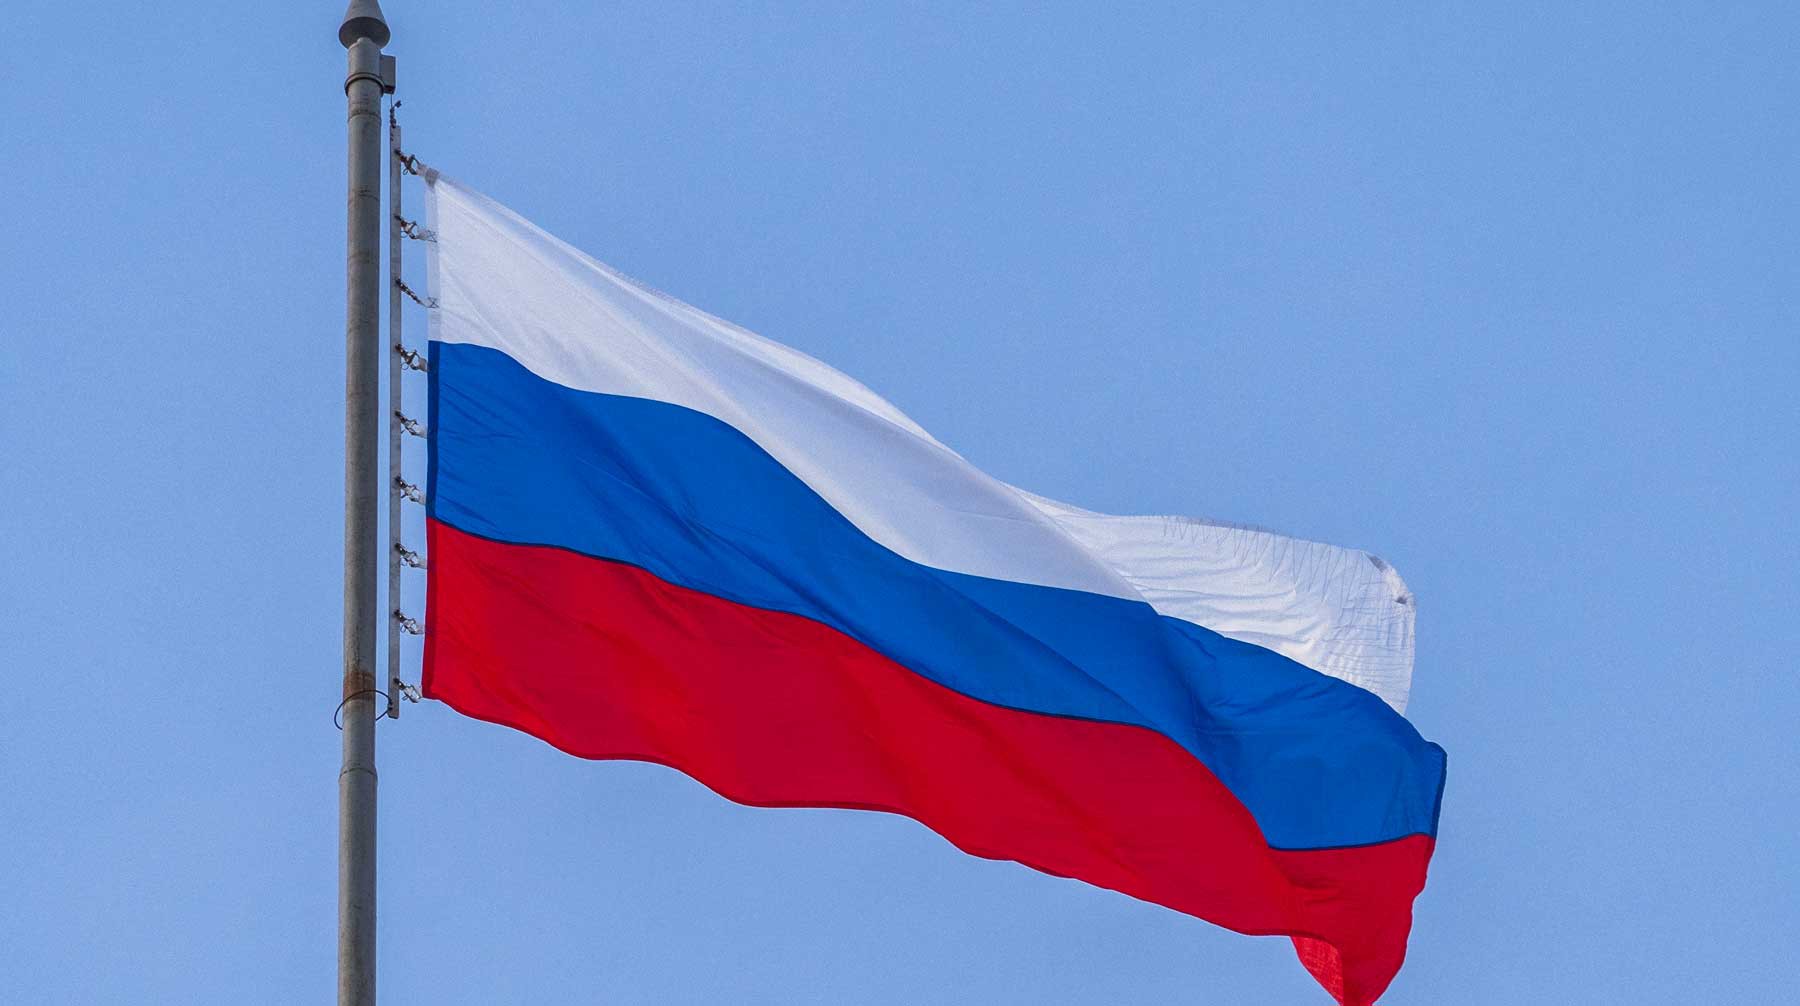 Dailystorm - Google после предупреждений удалил ролик с оскорблением флага России